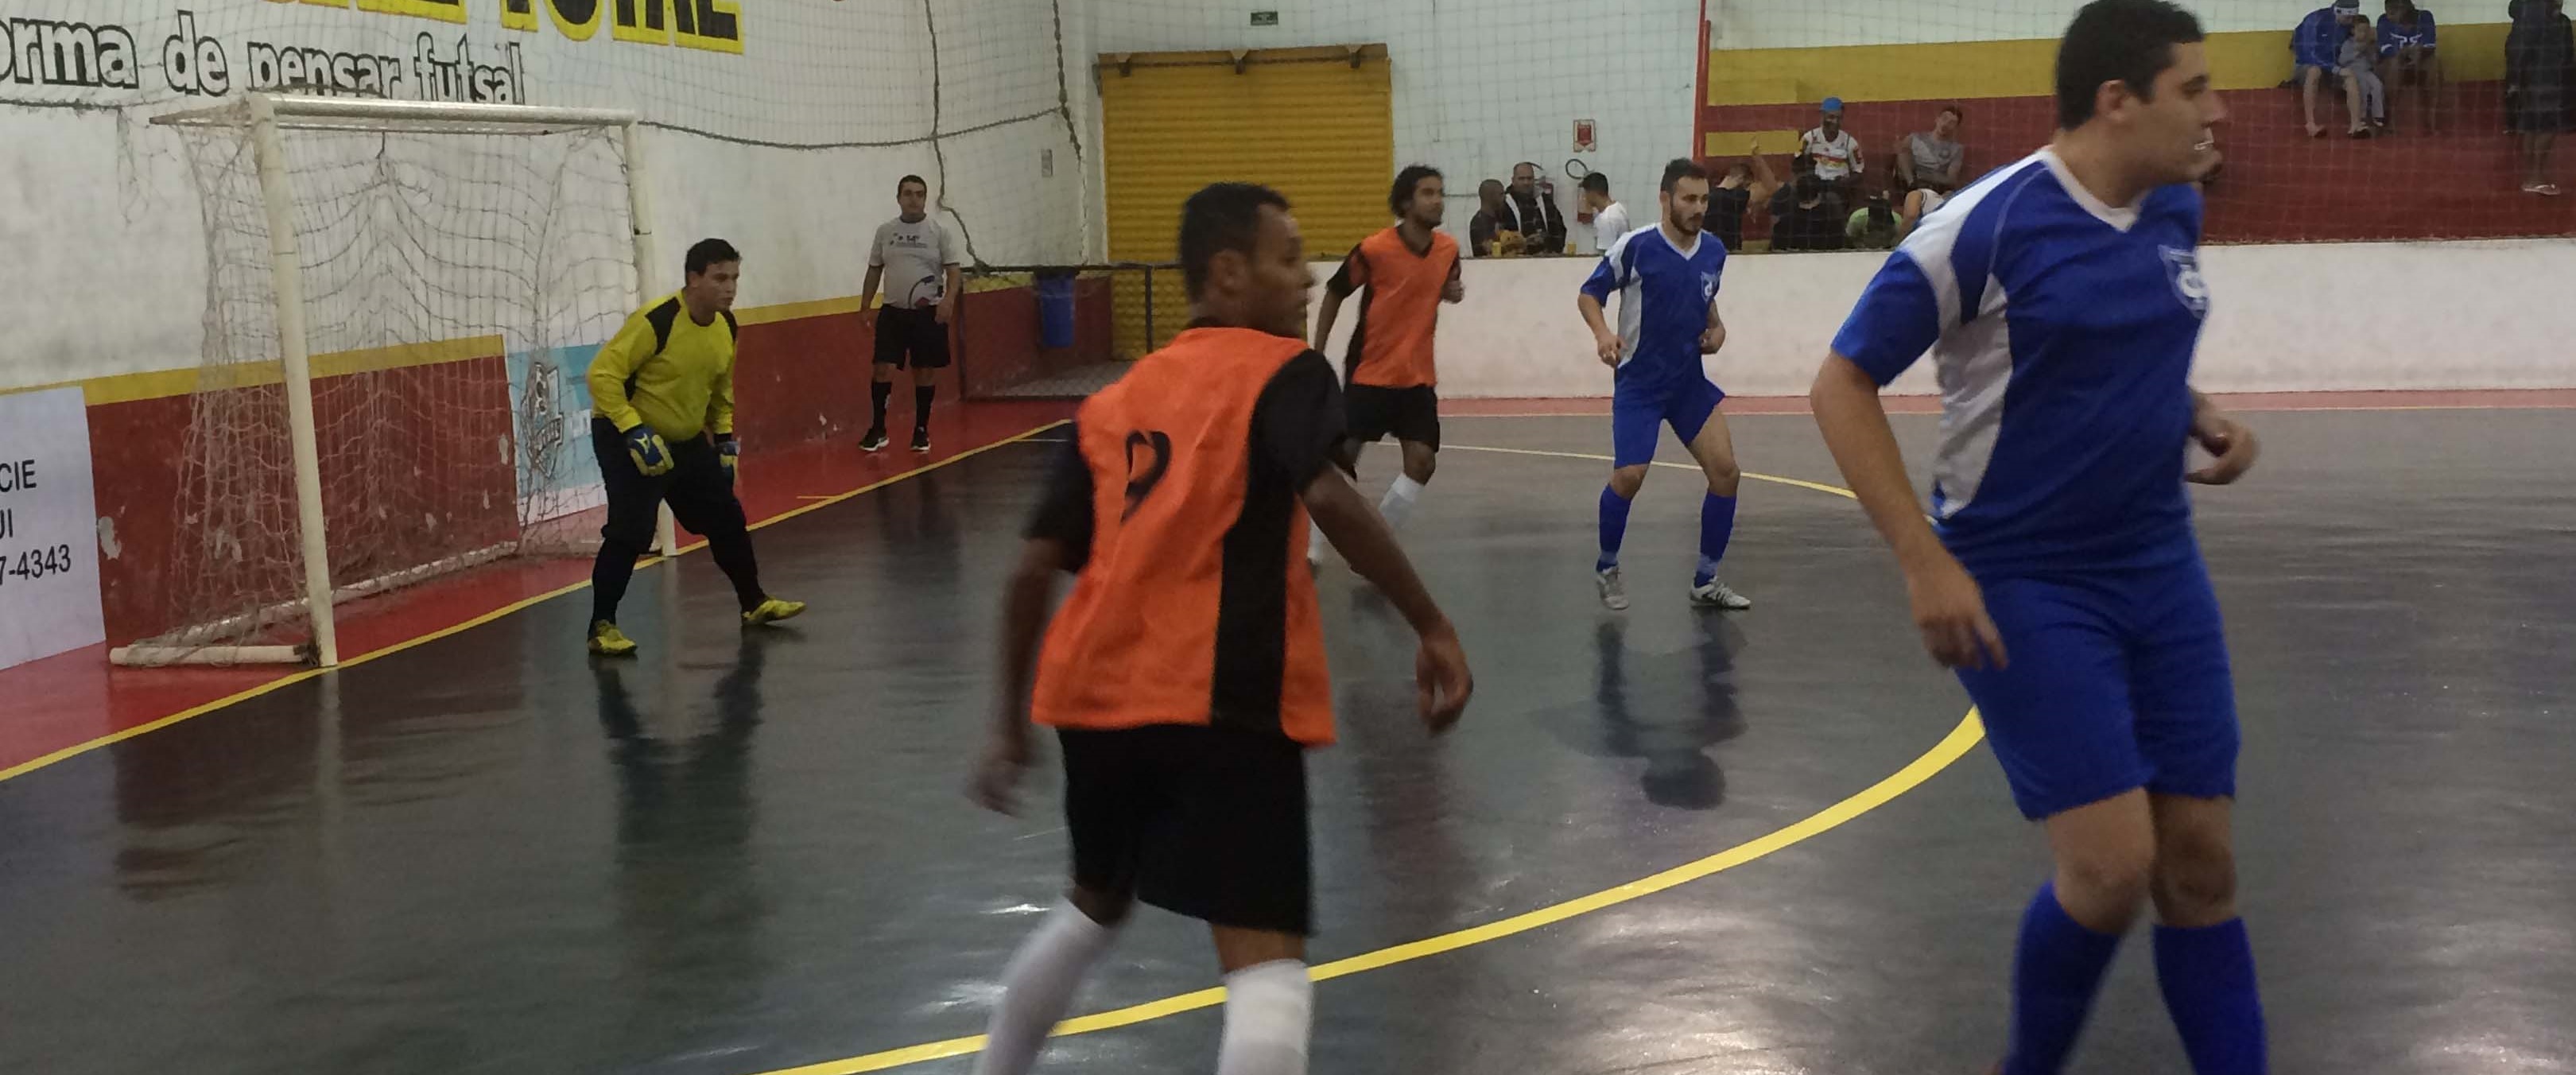 4º Torneio Reg. de Futsal Seaac Santos - Quartas de Finais